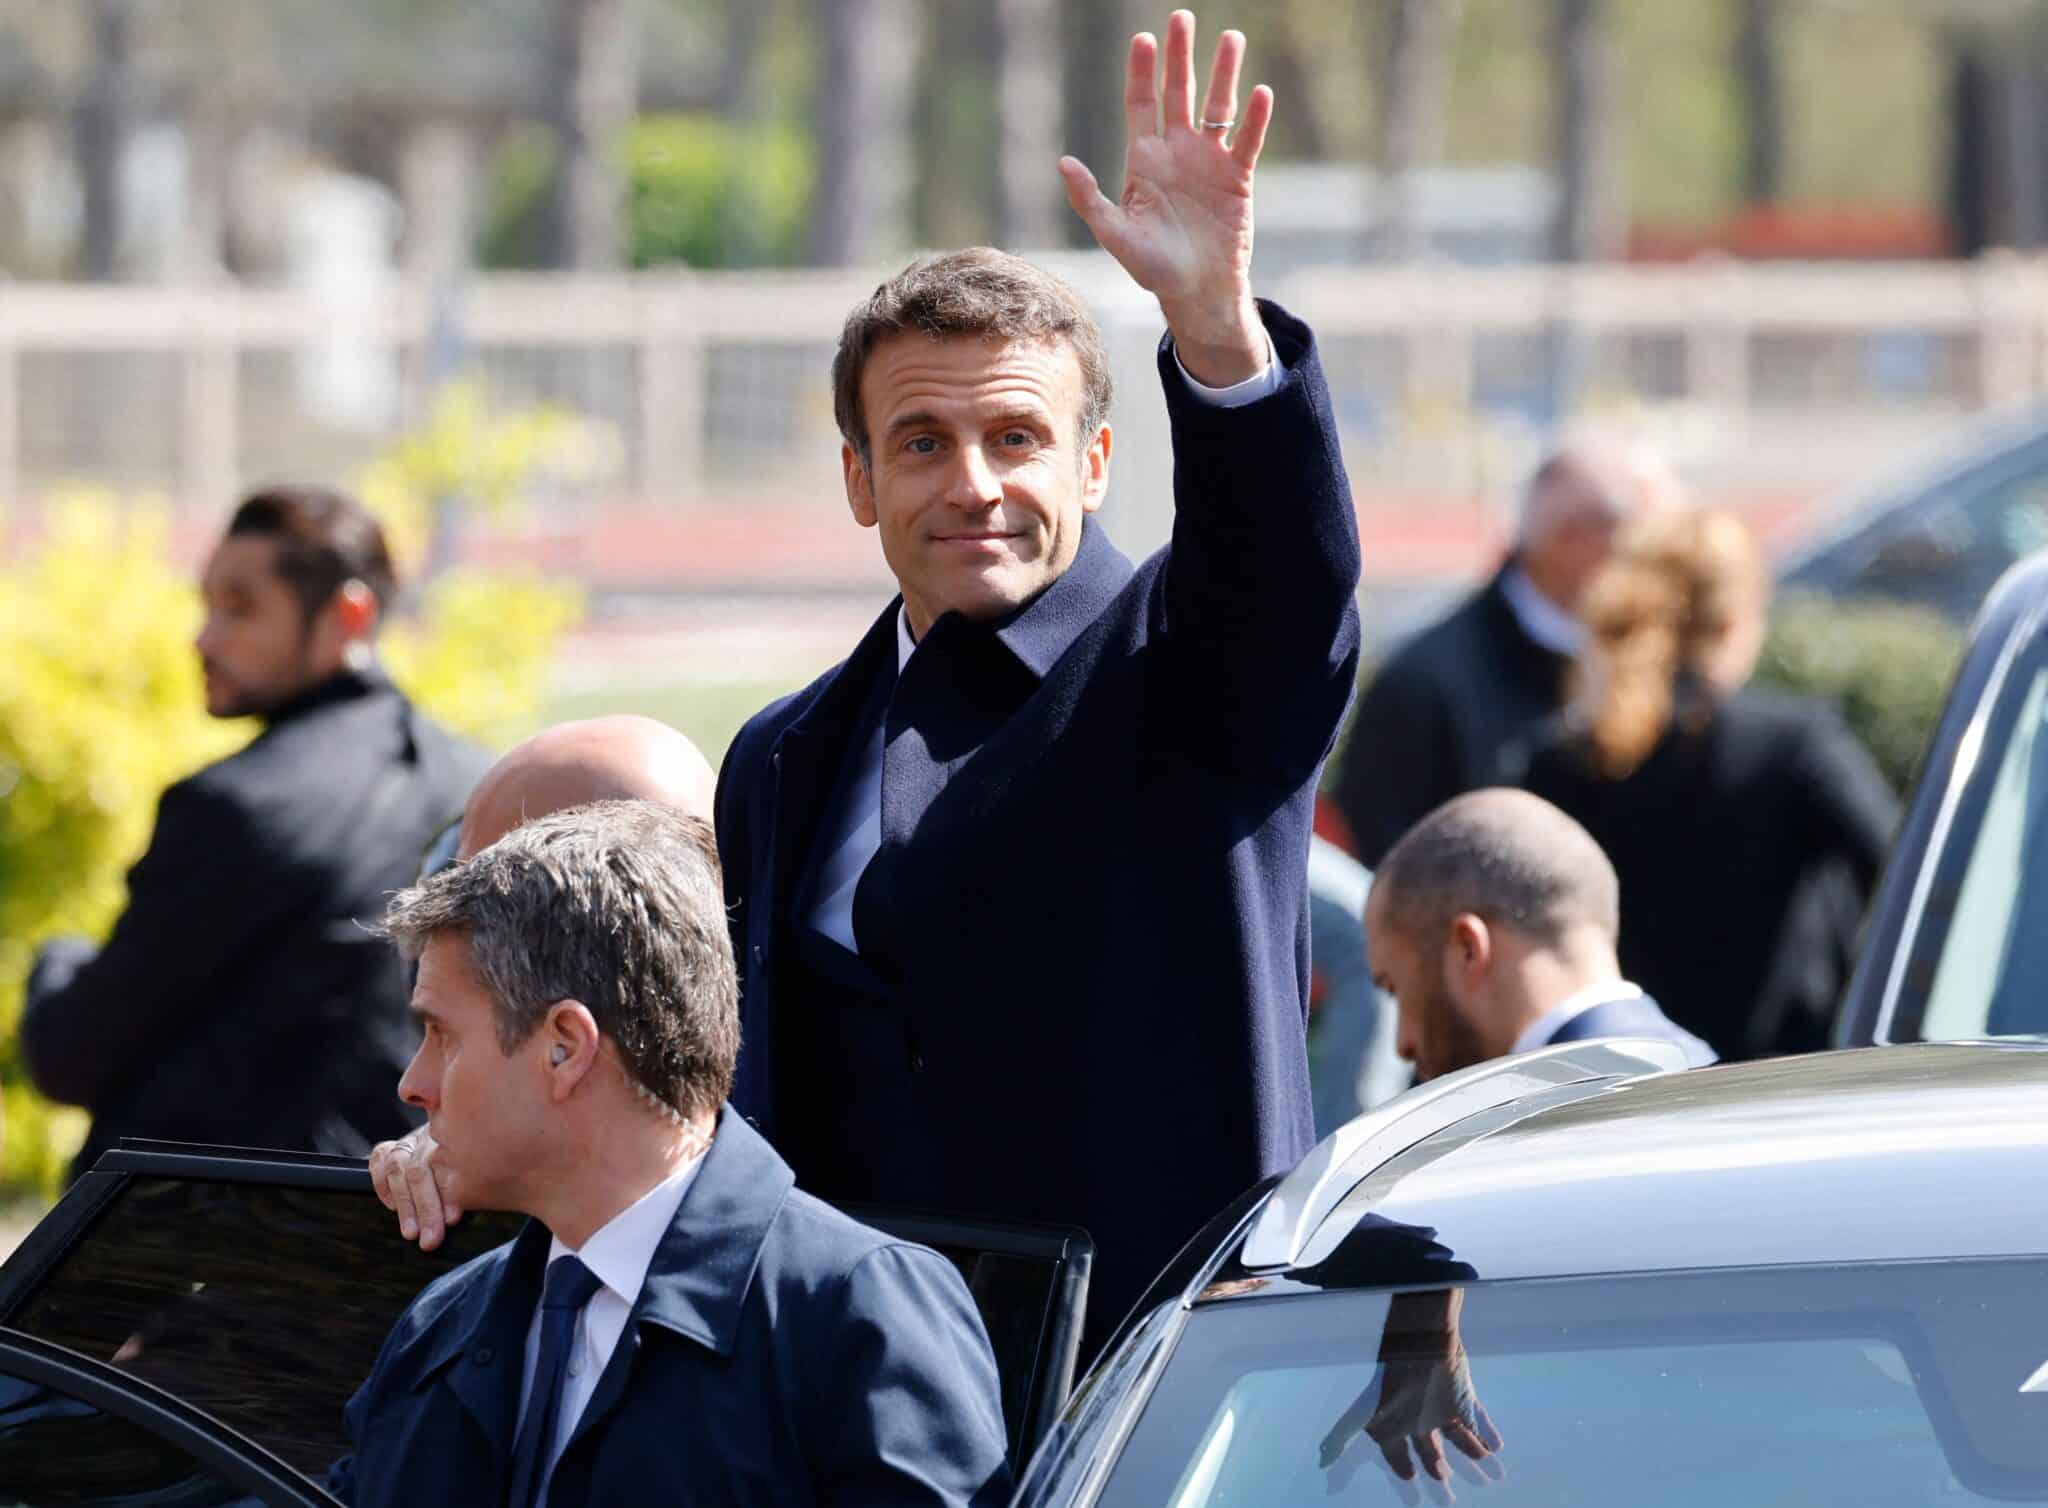 El presidente francés y candidato a la reelección del partido liberal la Republique en Marche (LREM) Emmanuel Macron